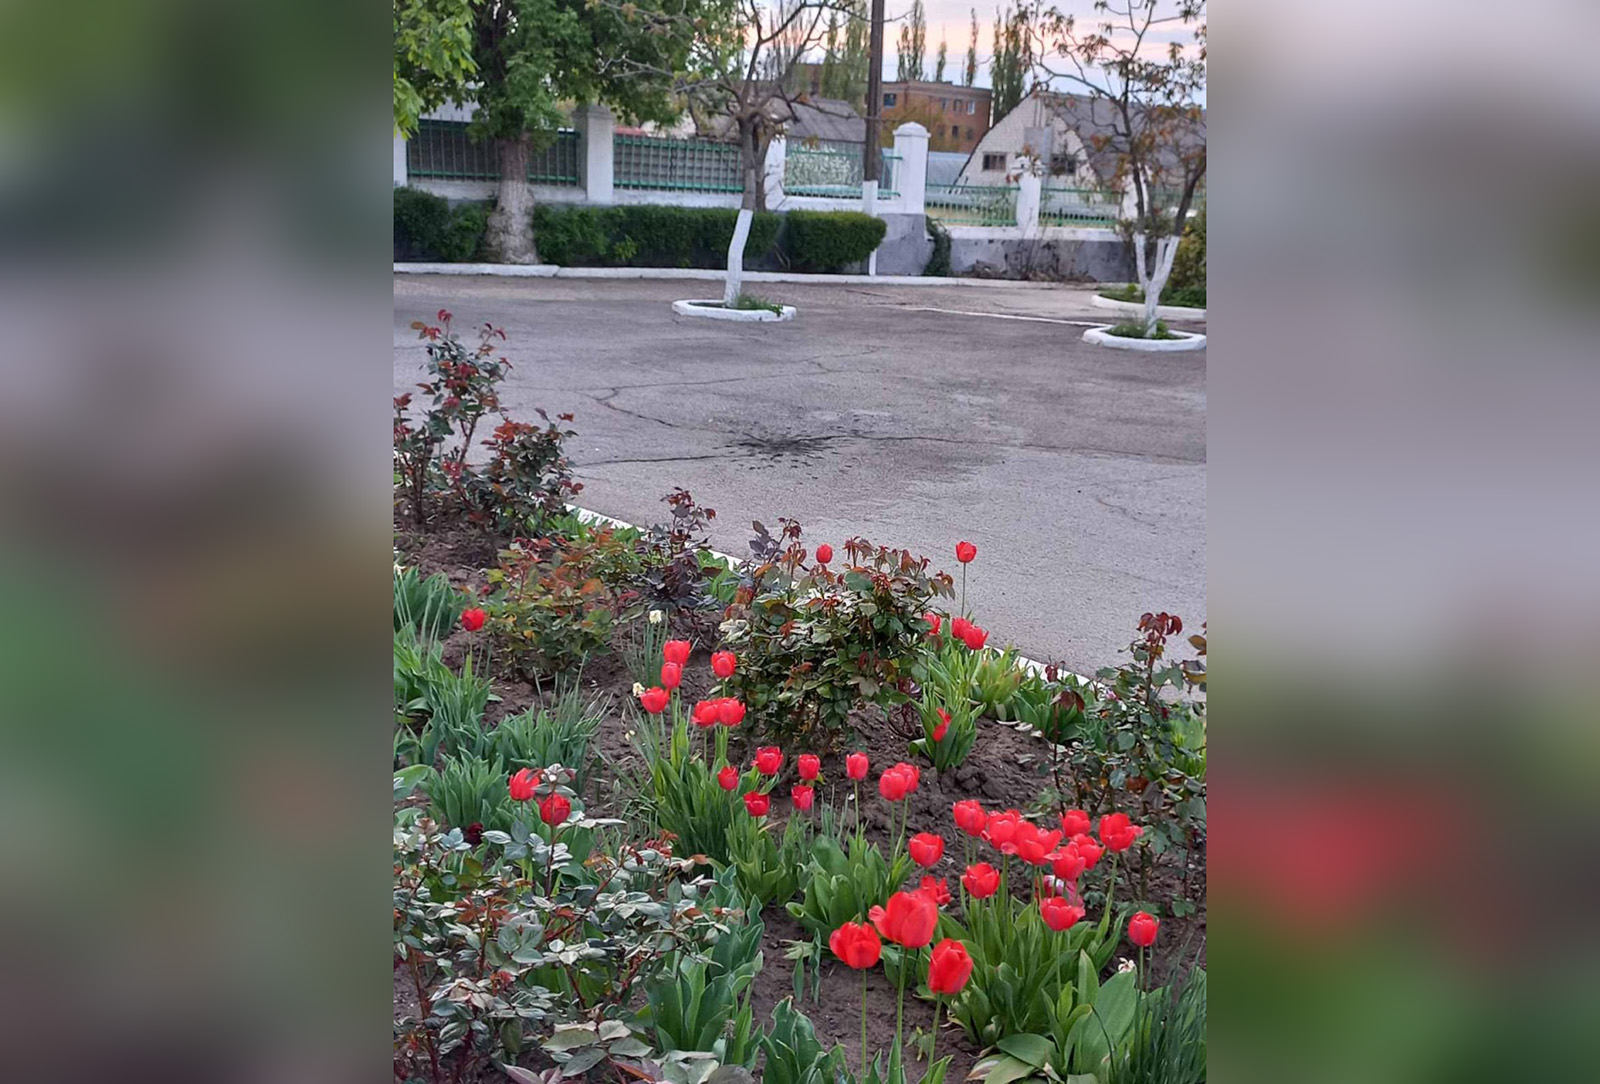 Жуткое сочетание цветущих тюльпанов и след на асфальте от попадания в него мины. Фото: Личный архив Ирины Уваровой